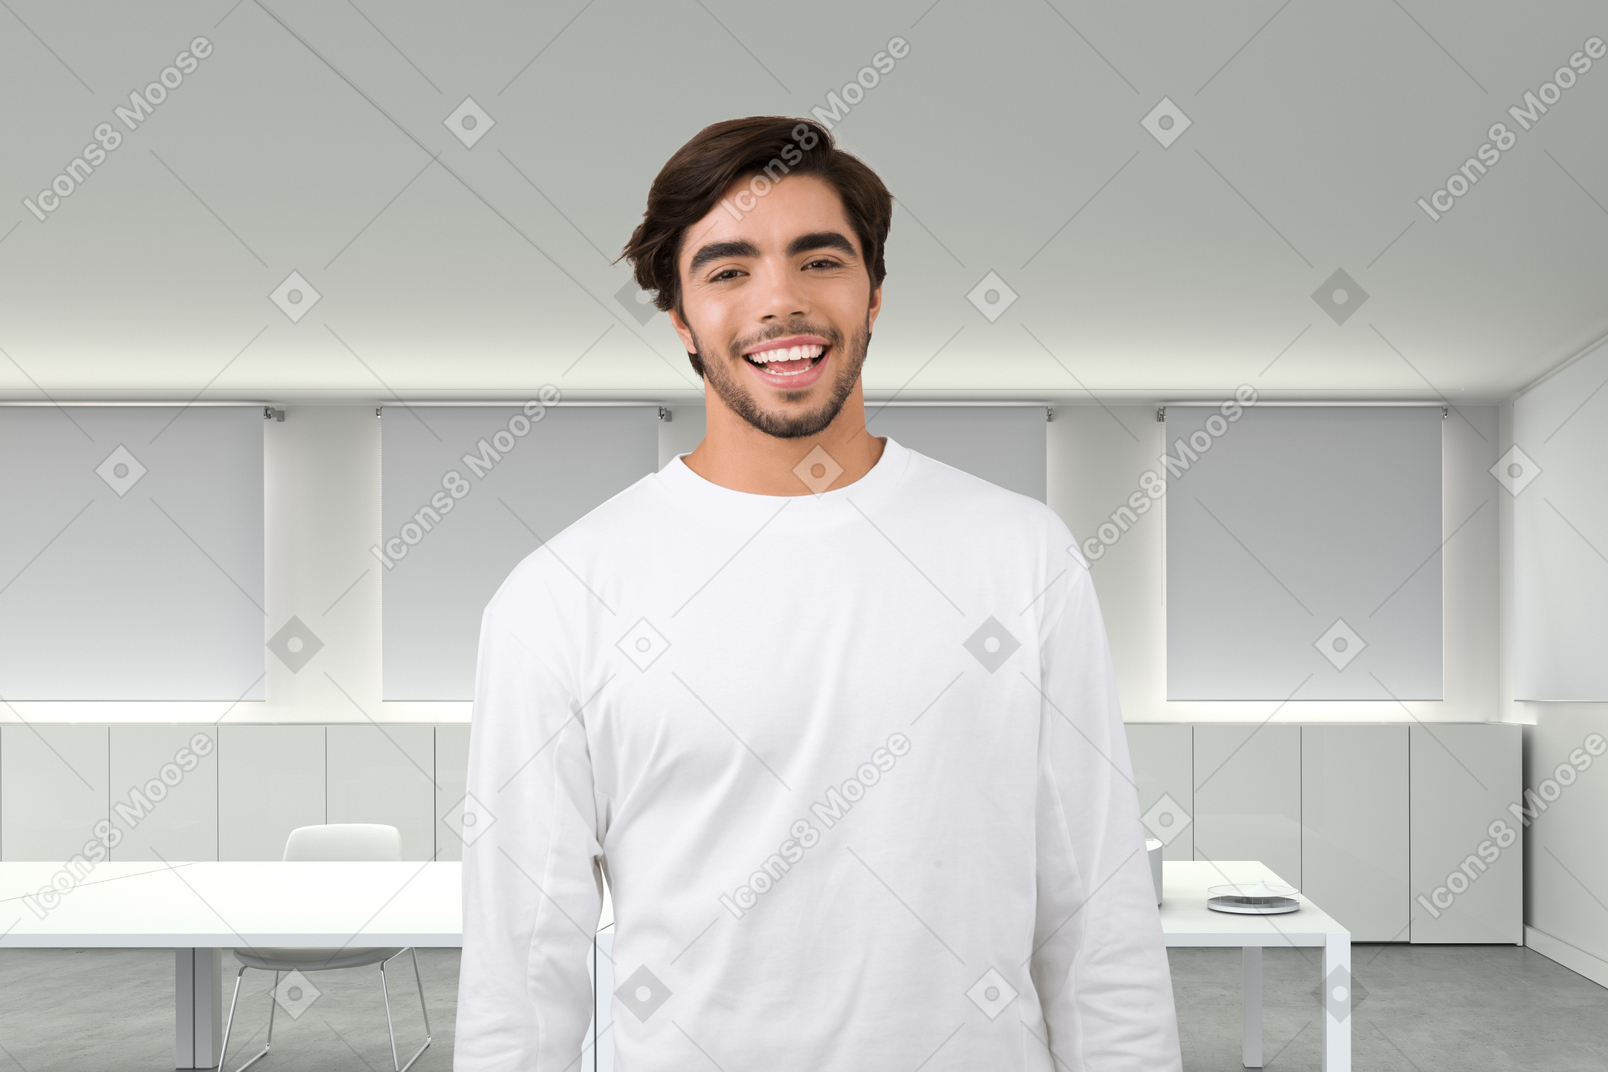 Un homme en chemise blanche debout dans une pièce